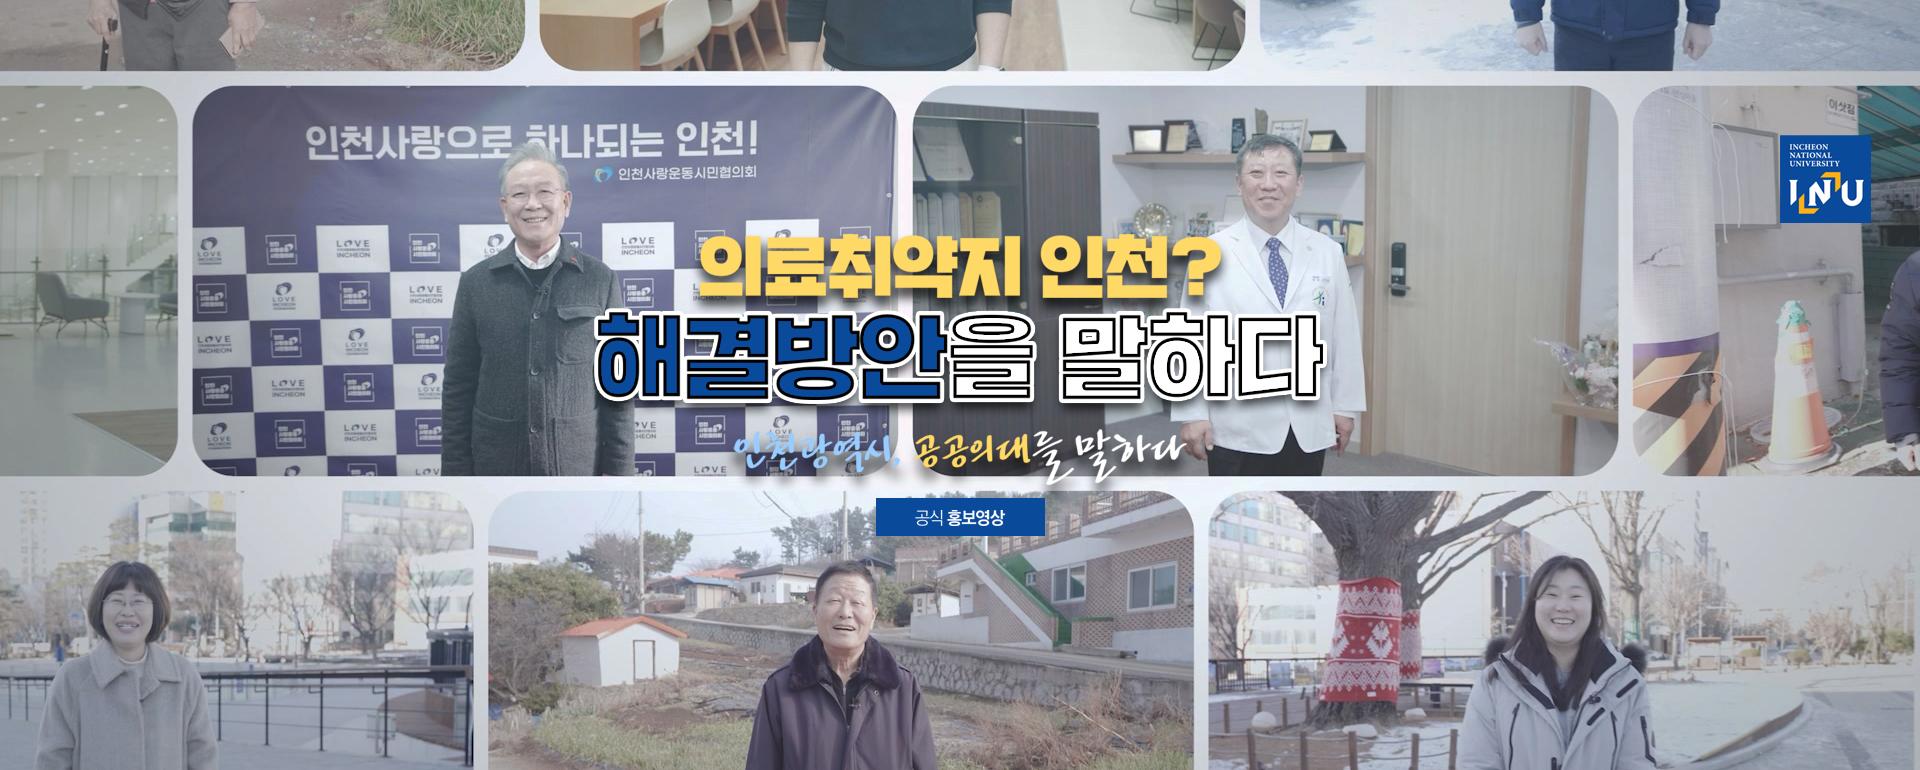 의료취약지 인천? 해결방안을 말하다, 인천광역시 공공의대를 말하다, 공식 홍보영상